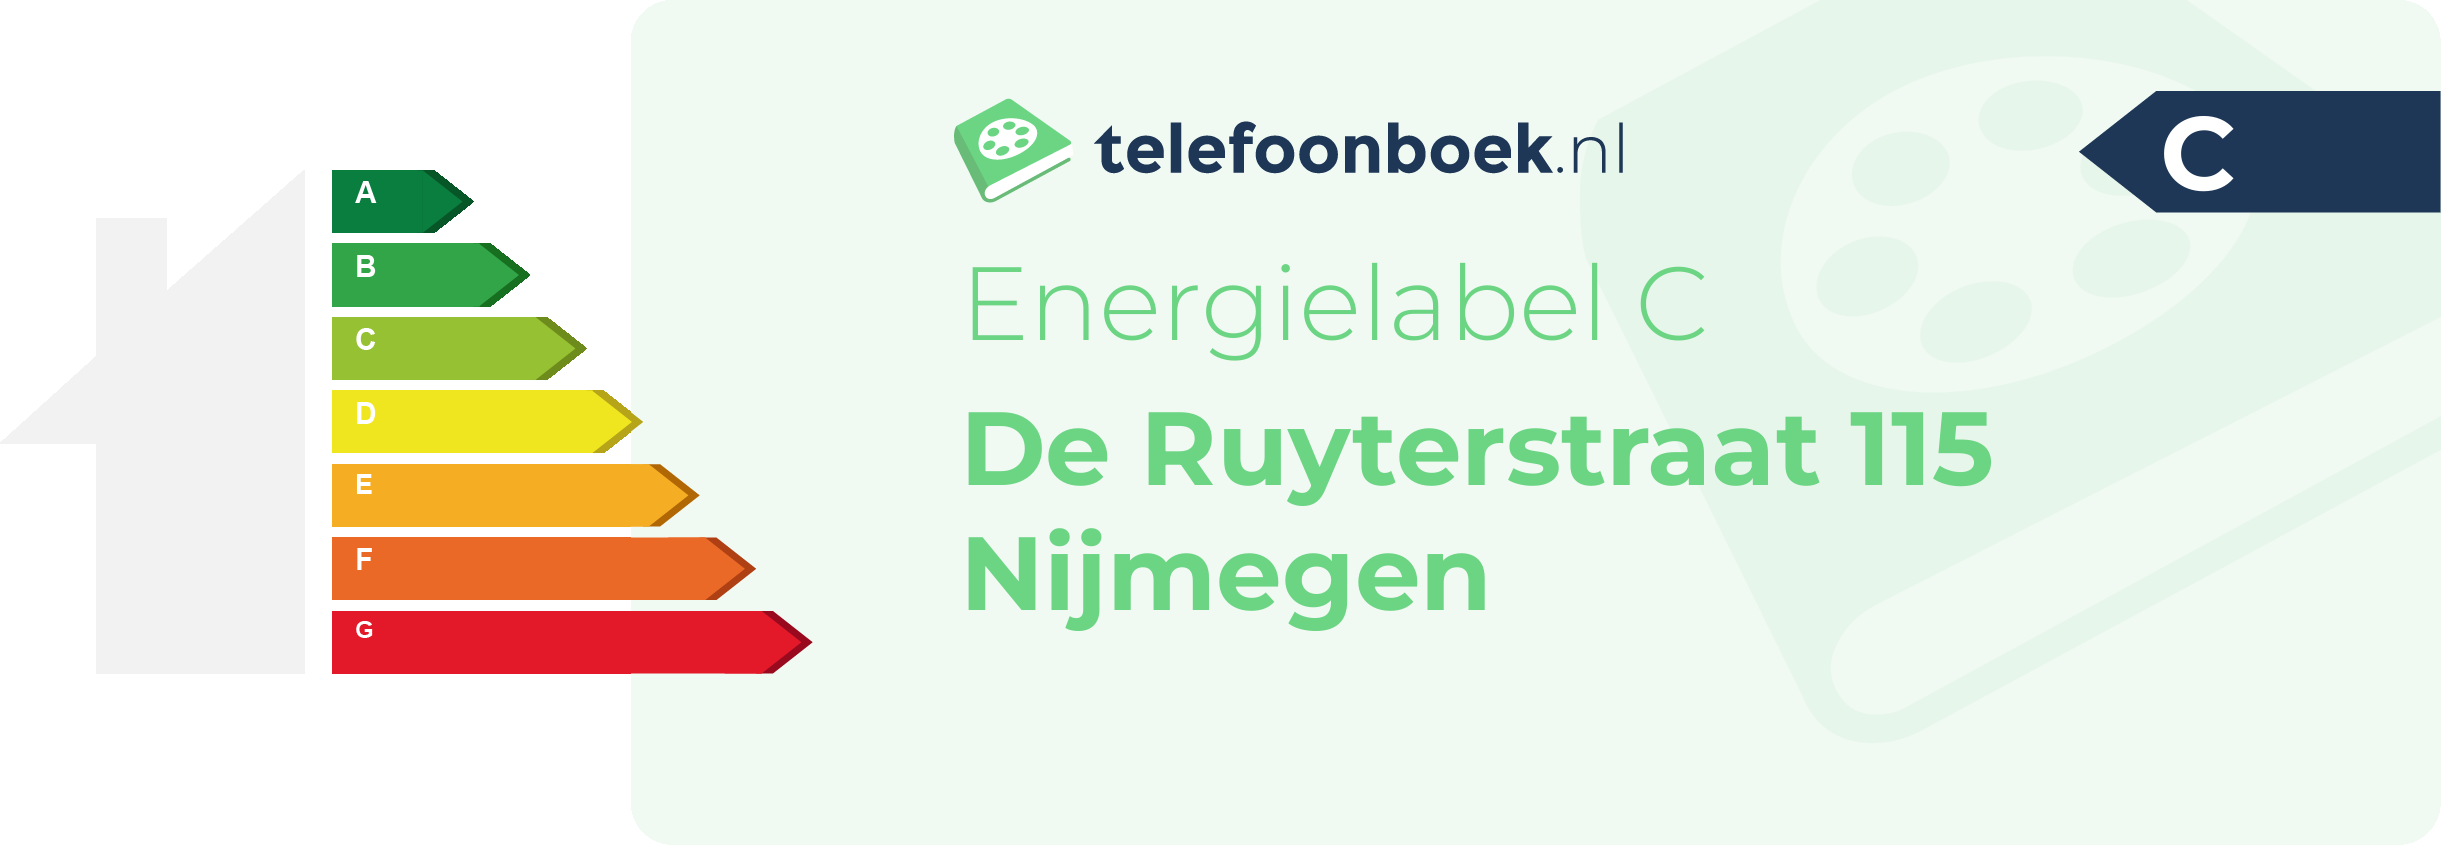 Energielabel De Ruyterstraat 115 Nijmegen